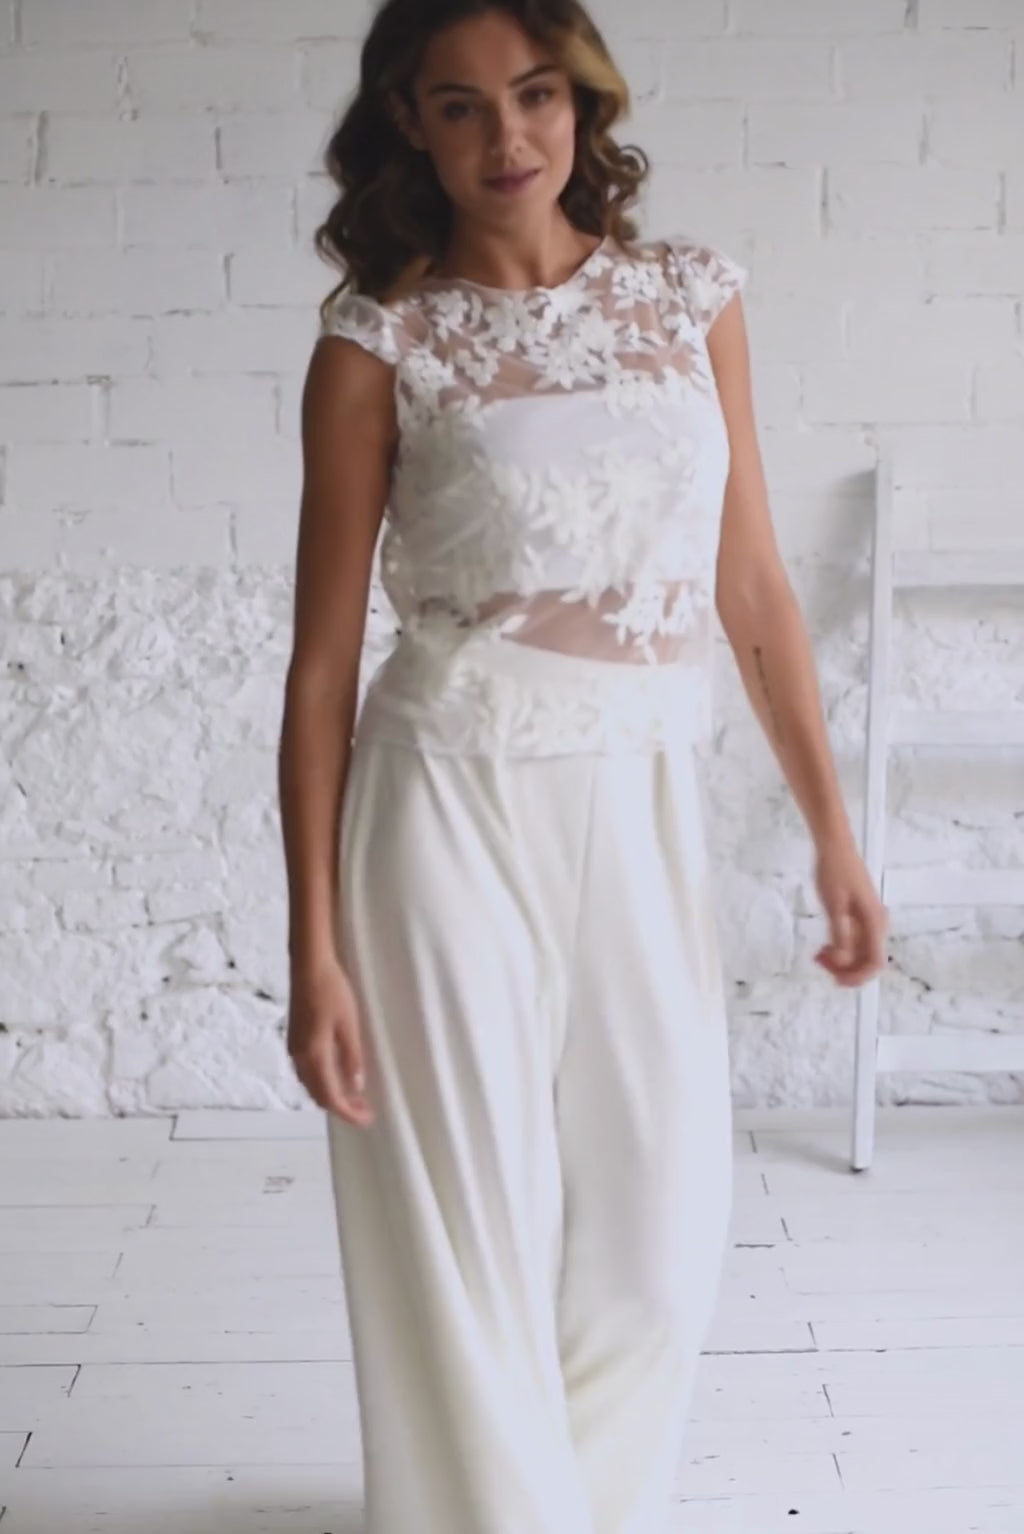 Video de modelo chica con traje de novia dos piezas con pantalon palazzo en crepe y crop top espalda abierta en tul bordado de flores blancas.